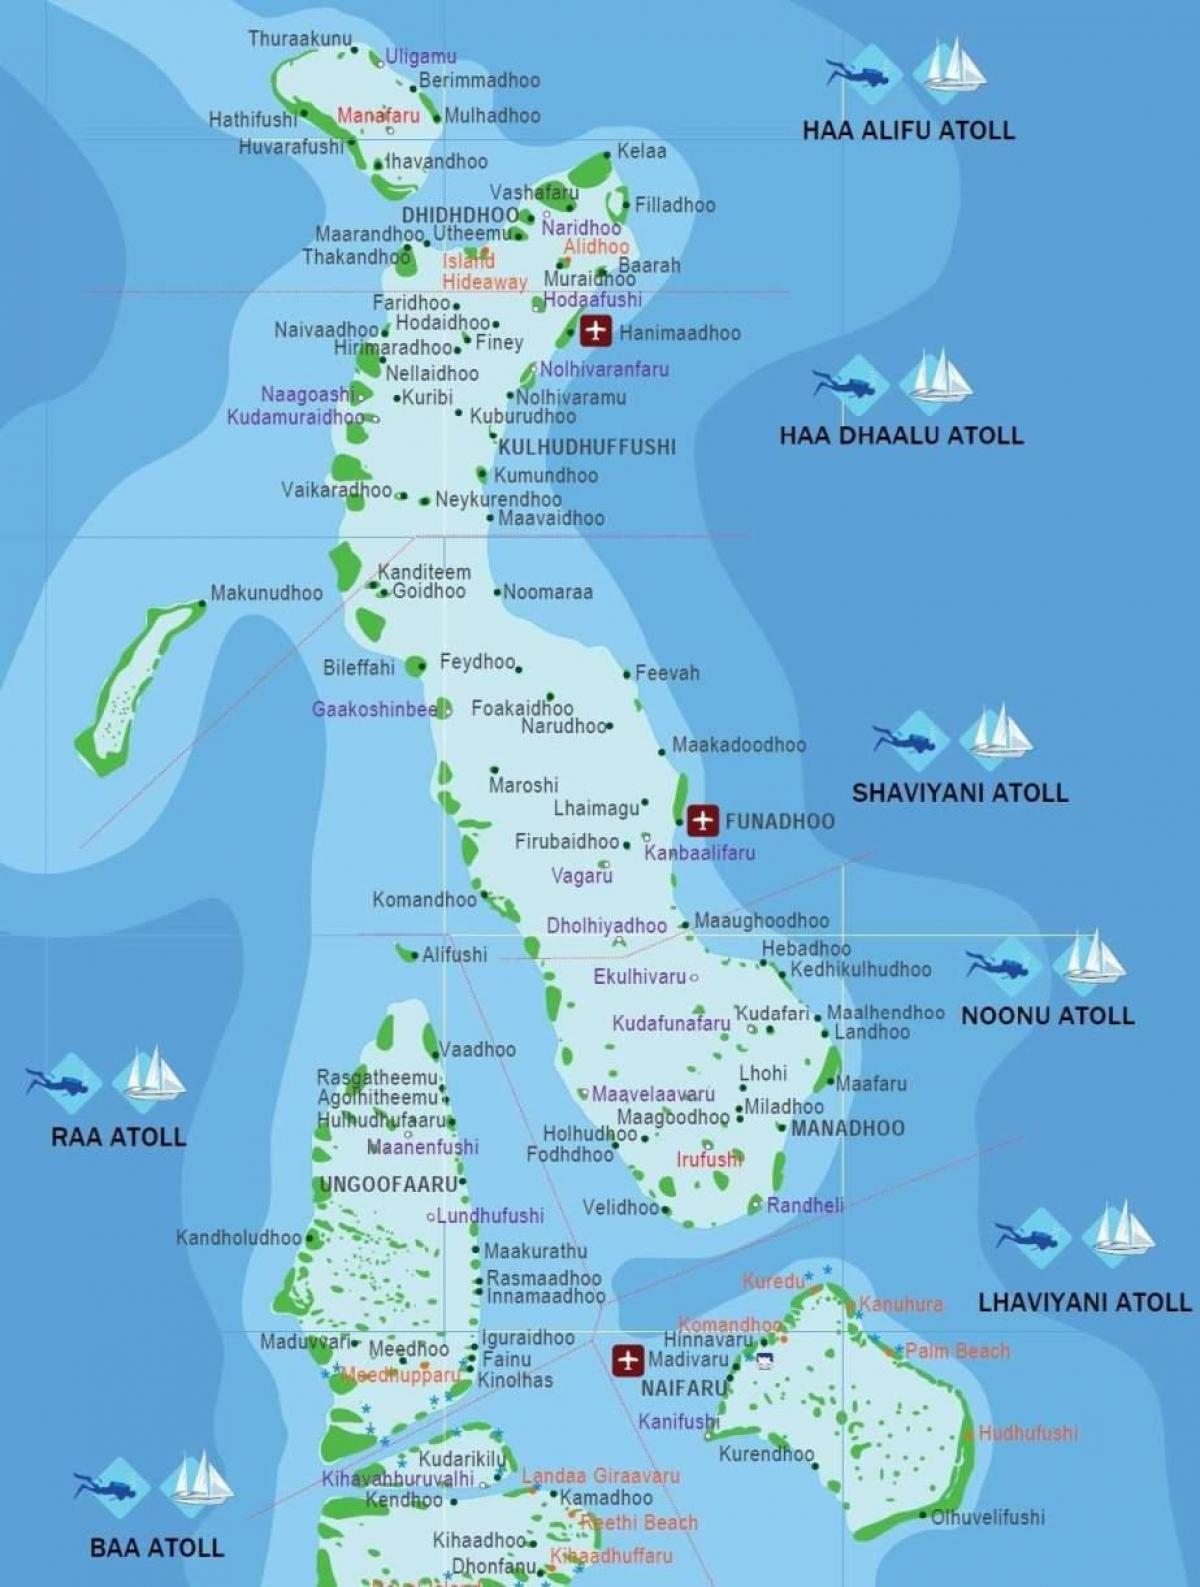 carte complète des maldives